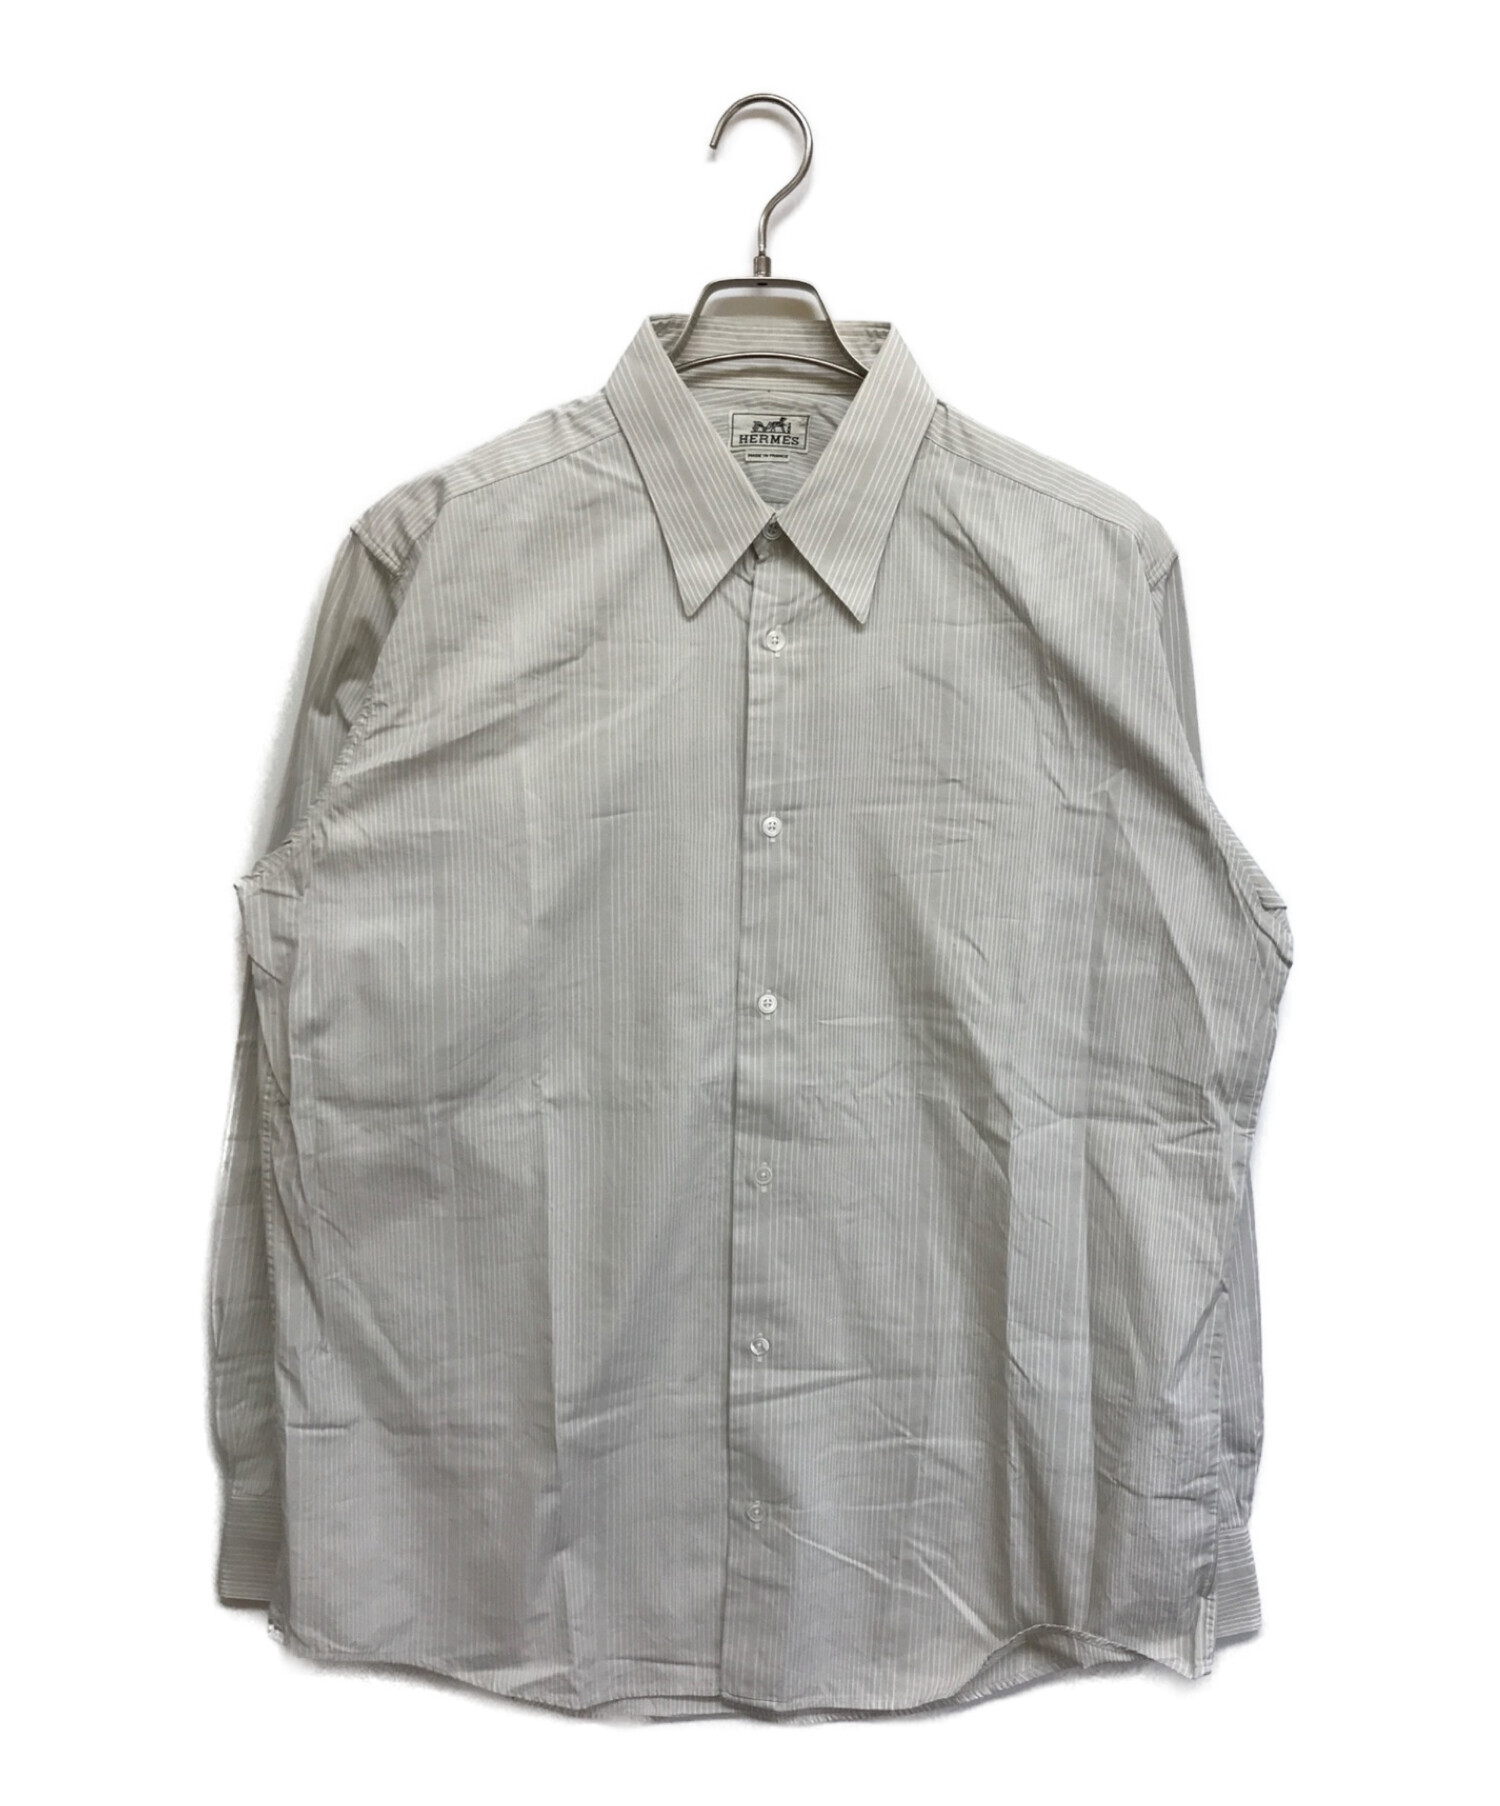 HERMES (エルメス) セリエボタンストライプドレスシャツ グレー サイズ:L